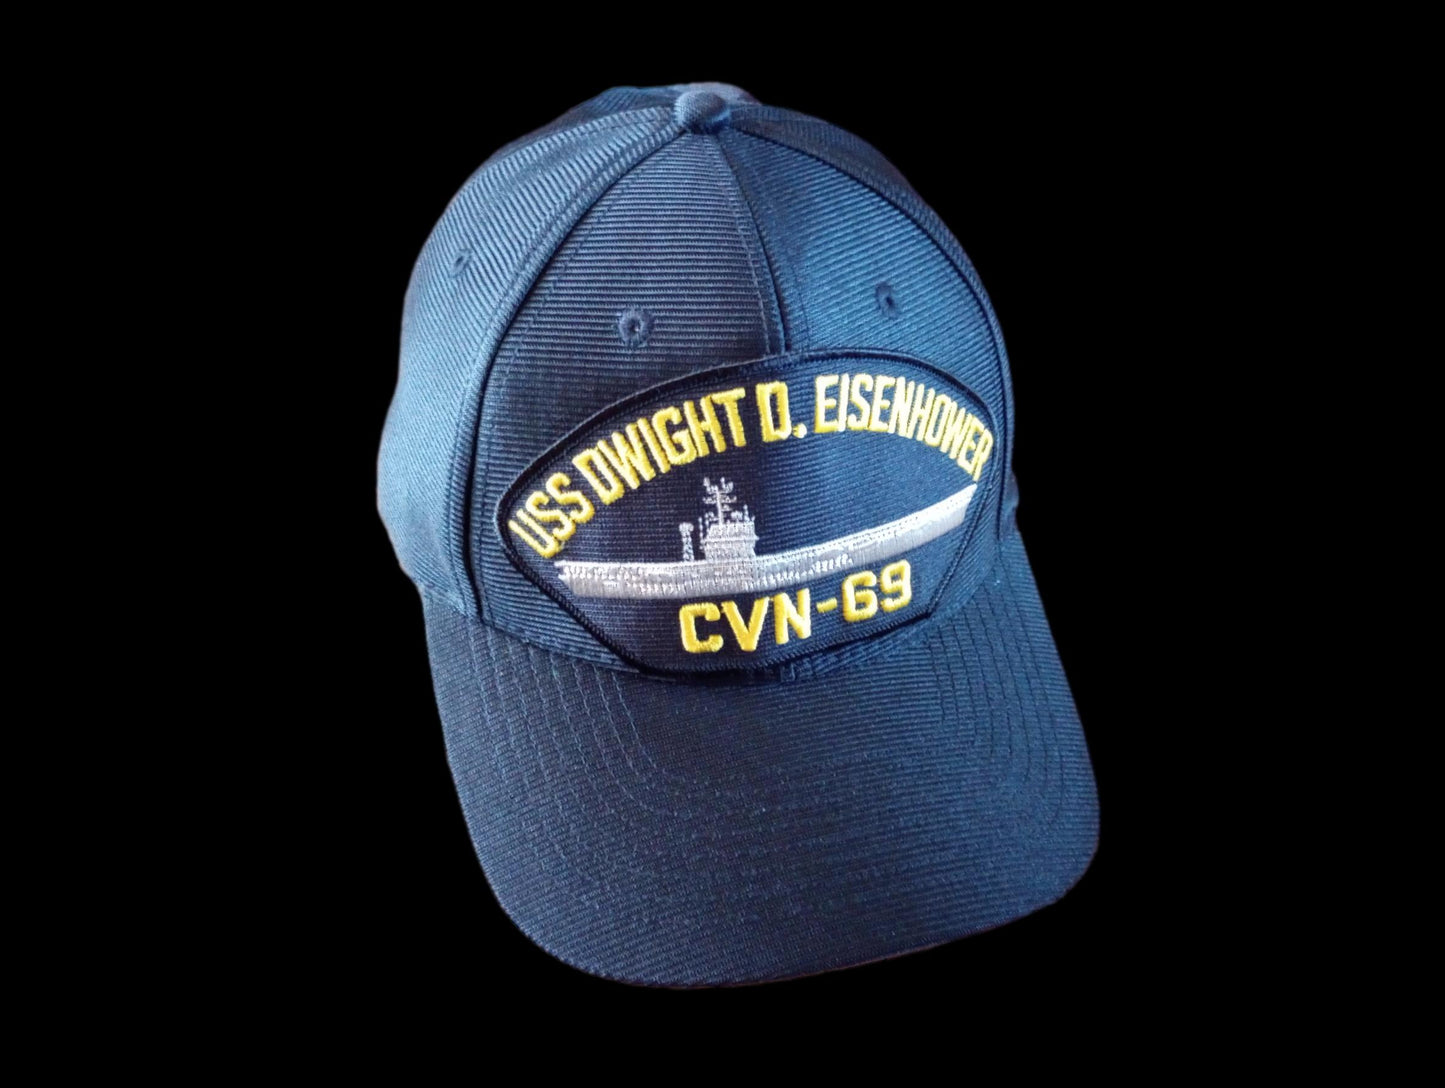 USS DWIGHT D EISENHOWER CVN-69 NAVY SHIP HAT U.S MILITARY OFFICIAL  CAP USA MADE